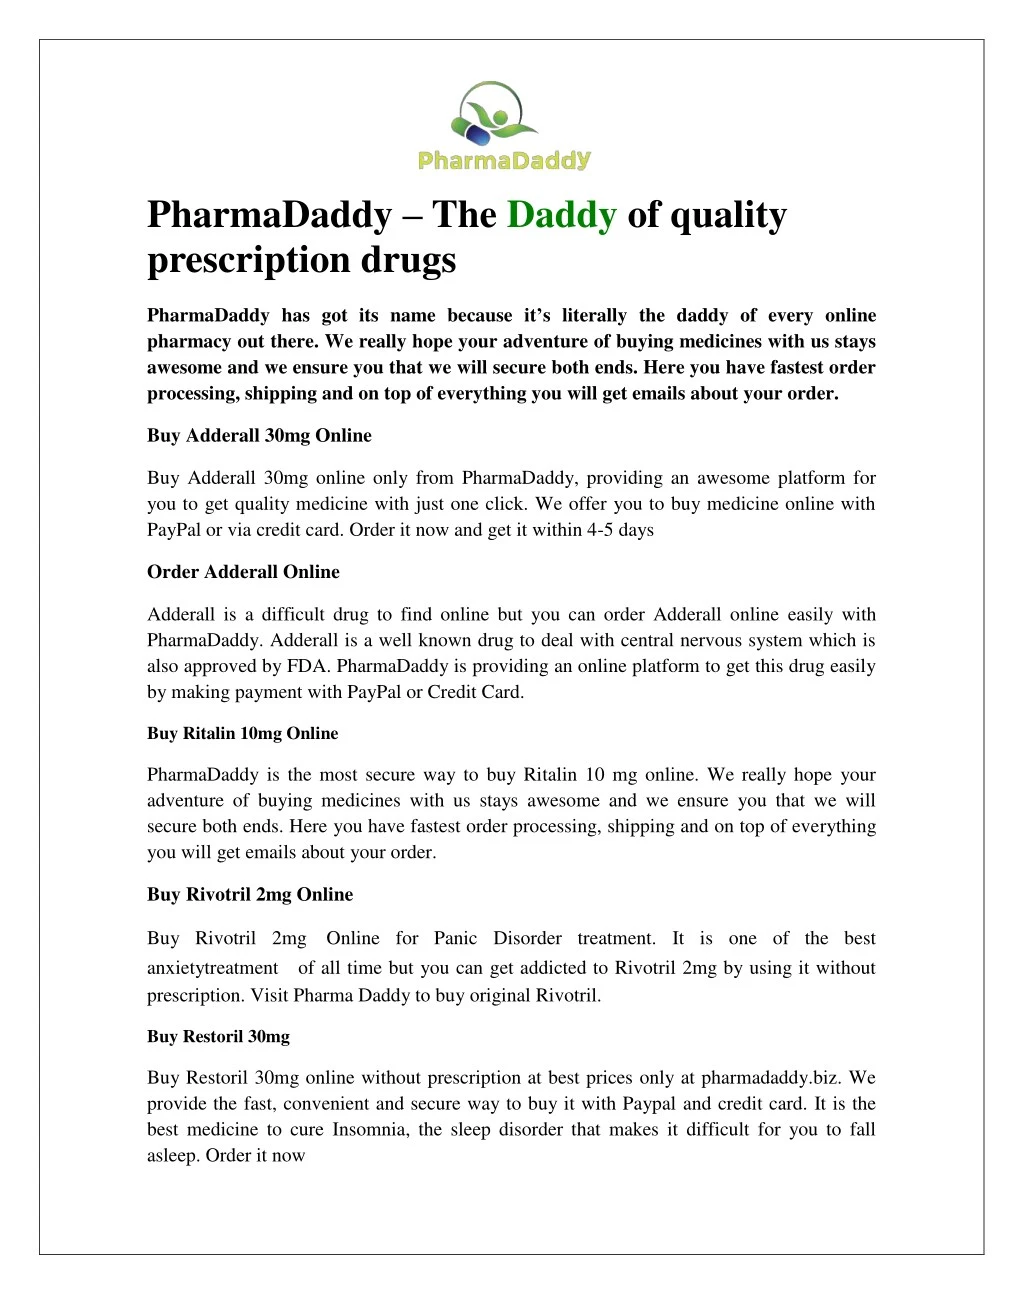 pharmadaddy the daddy of quality prescription